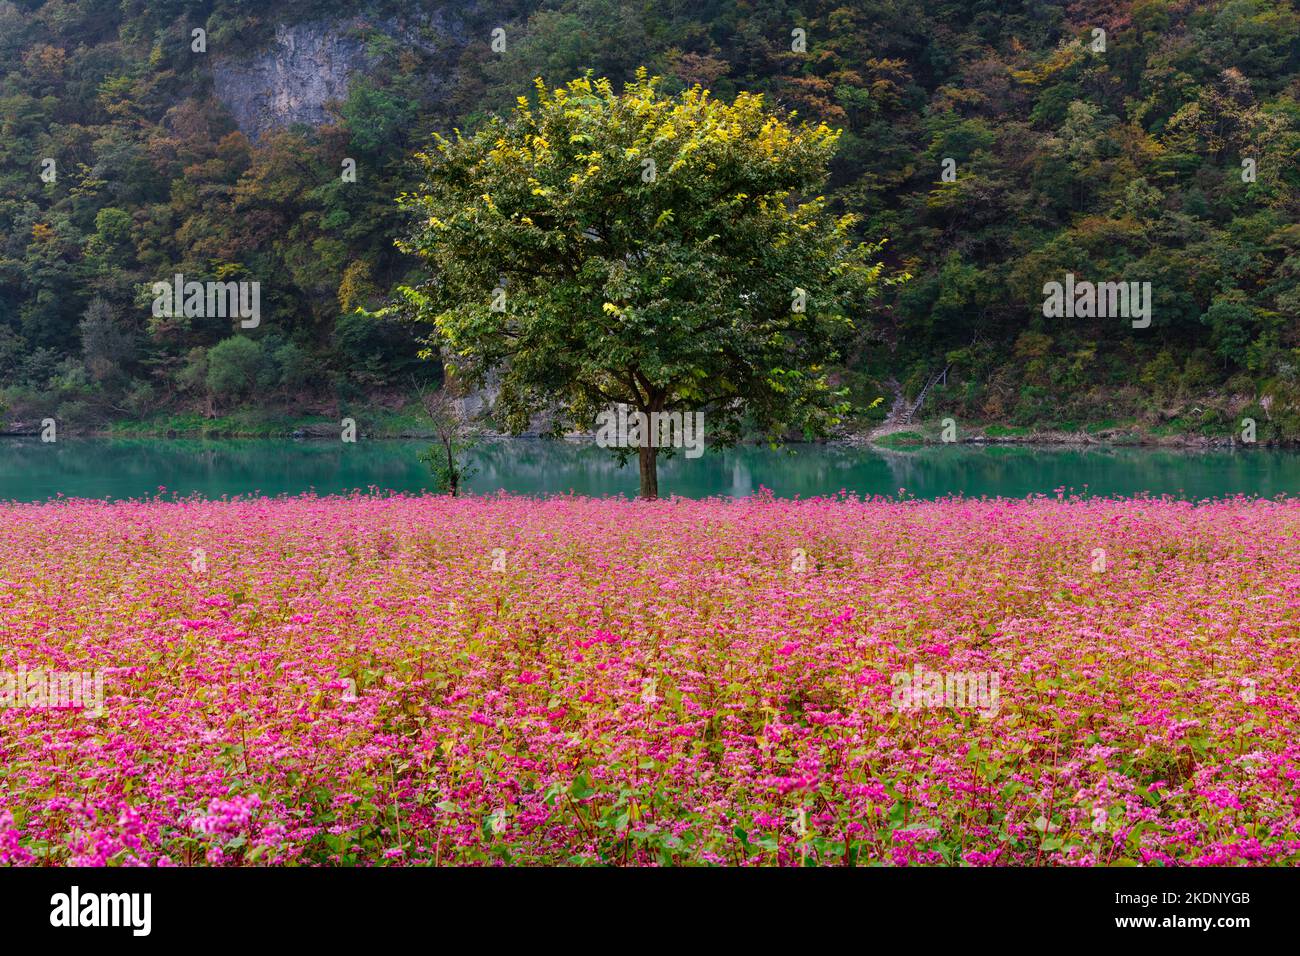 Splendido scenario autunnale in Corea. Un albero tra campi di fiori di grano saraceno rosso al mattino presso il fiume Donggang in una valle di montagna. Foto Stock